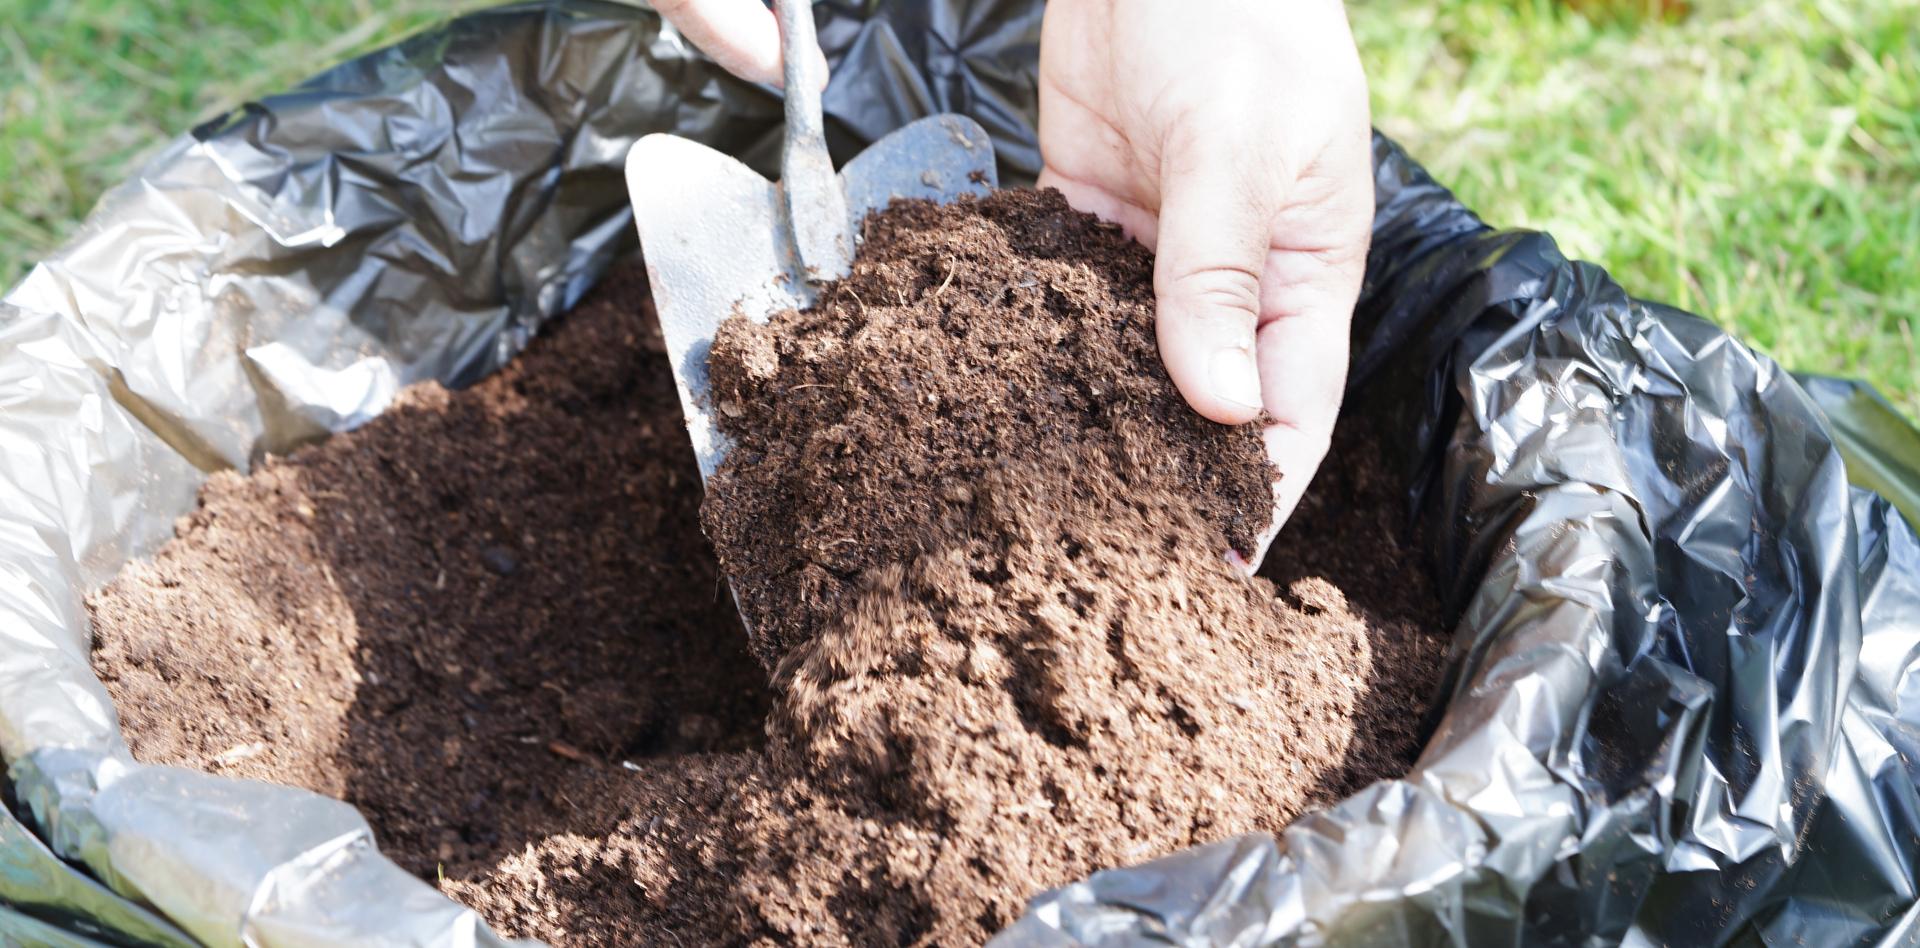 Na tym malowniczym obrazku widzimy stos kompostu do kwiatów, który jest nieocenionym źródłem składników odżywczych dla roślin. Widoczne są warstwy rozkładających się organicznych materiałów, takich jak resztki roślinne i liście, tworzące idealne środowisko dla zdrowego wzrostu i rozwoju kwiatów. Kompost dostarcza nie tylko niezbędnych składników odżywczych, ale także poprawia strukturę gleby, zwiększa jej zdolność do zatrzymywania wilgoci i wspiera zdrową mikrobiotę glebową. Dzięki takiemu kompostowi kwiaty będą w pełni rozkwitać i cieszyć oko swoim pięknem